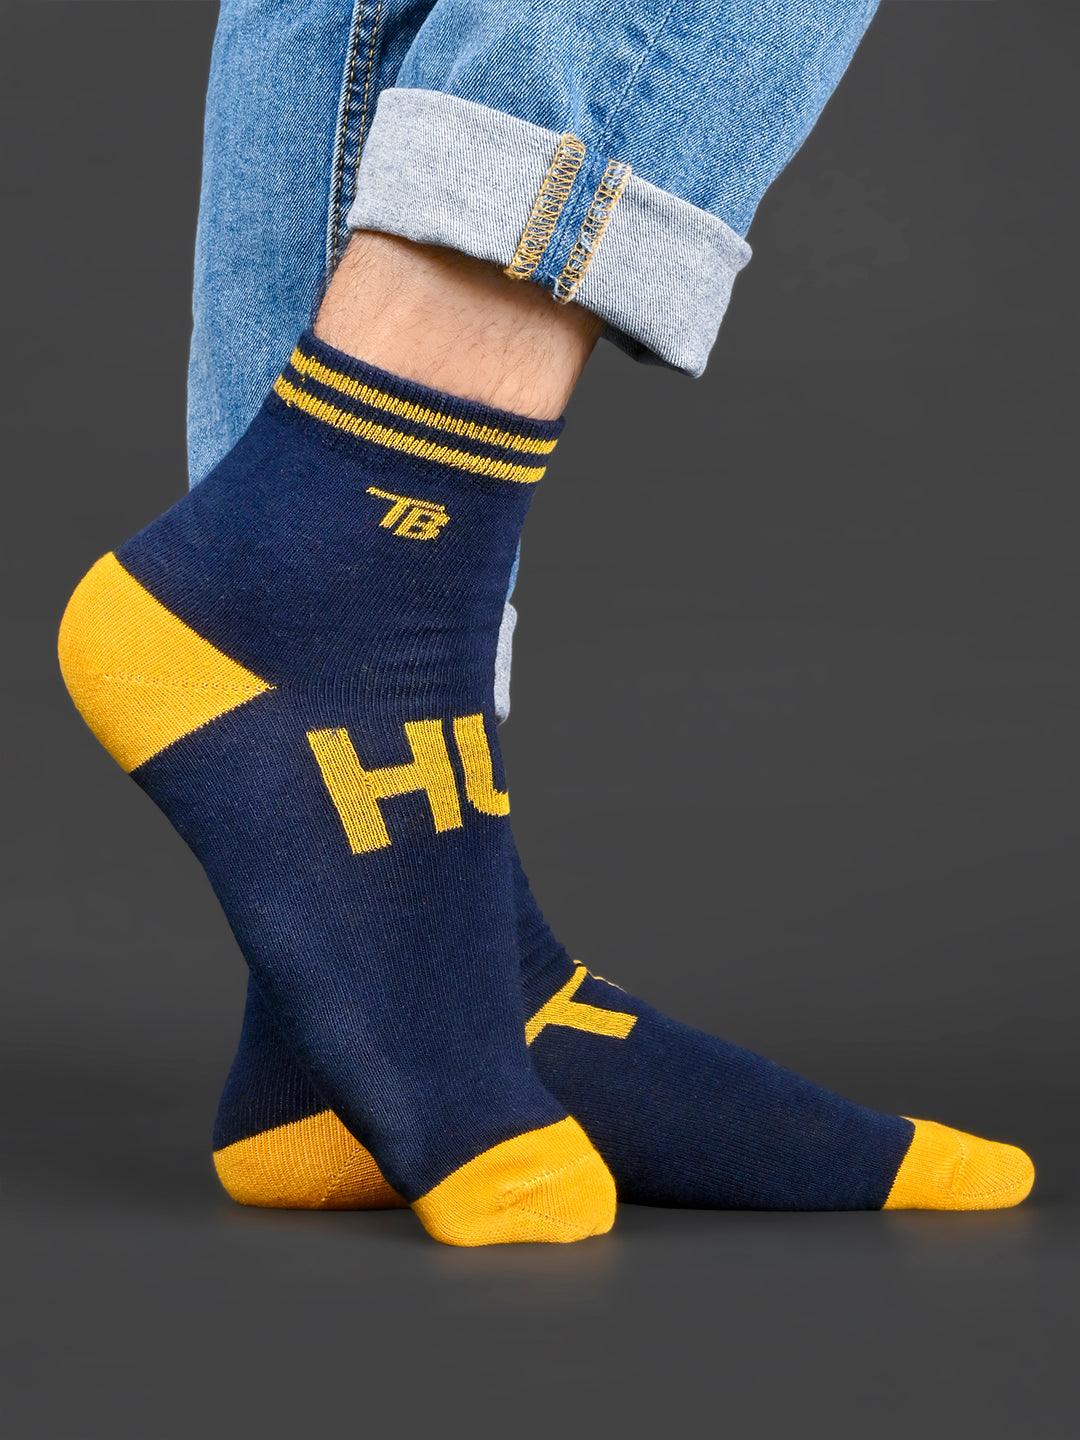 Buy Hustle Printed Blue Half-Length Unisex Pack of 1 Socks Online